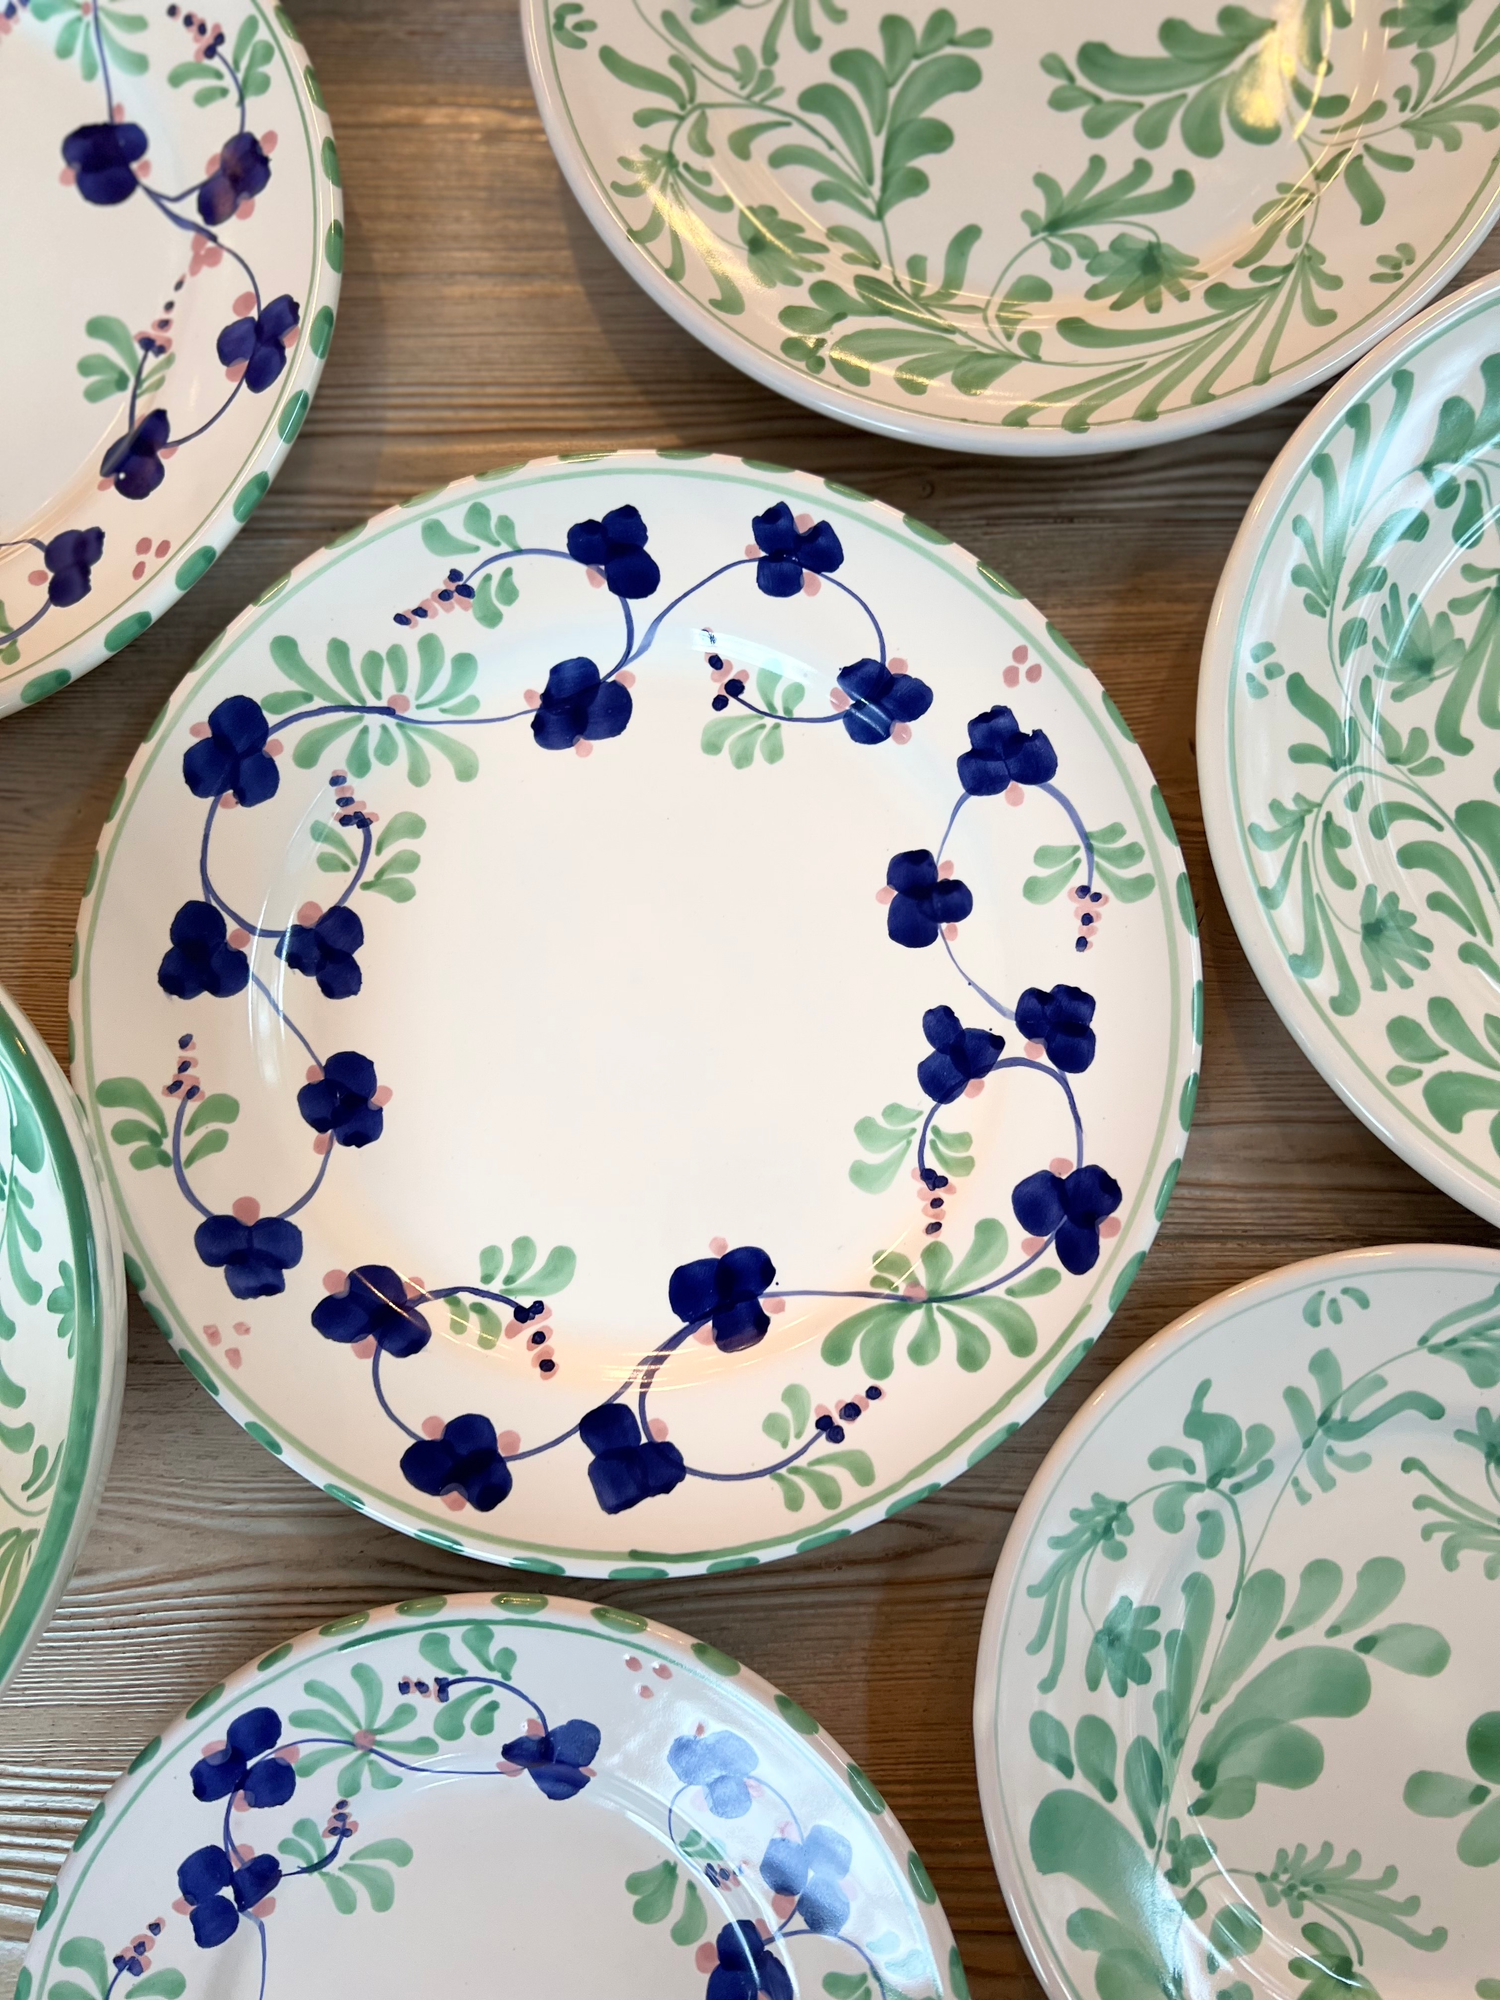 Handmade Ceramics and Melamine Plates